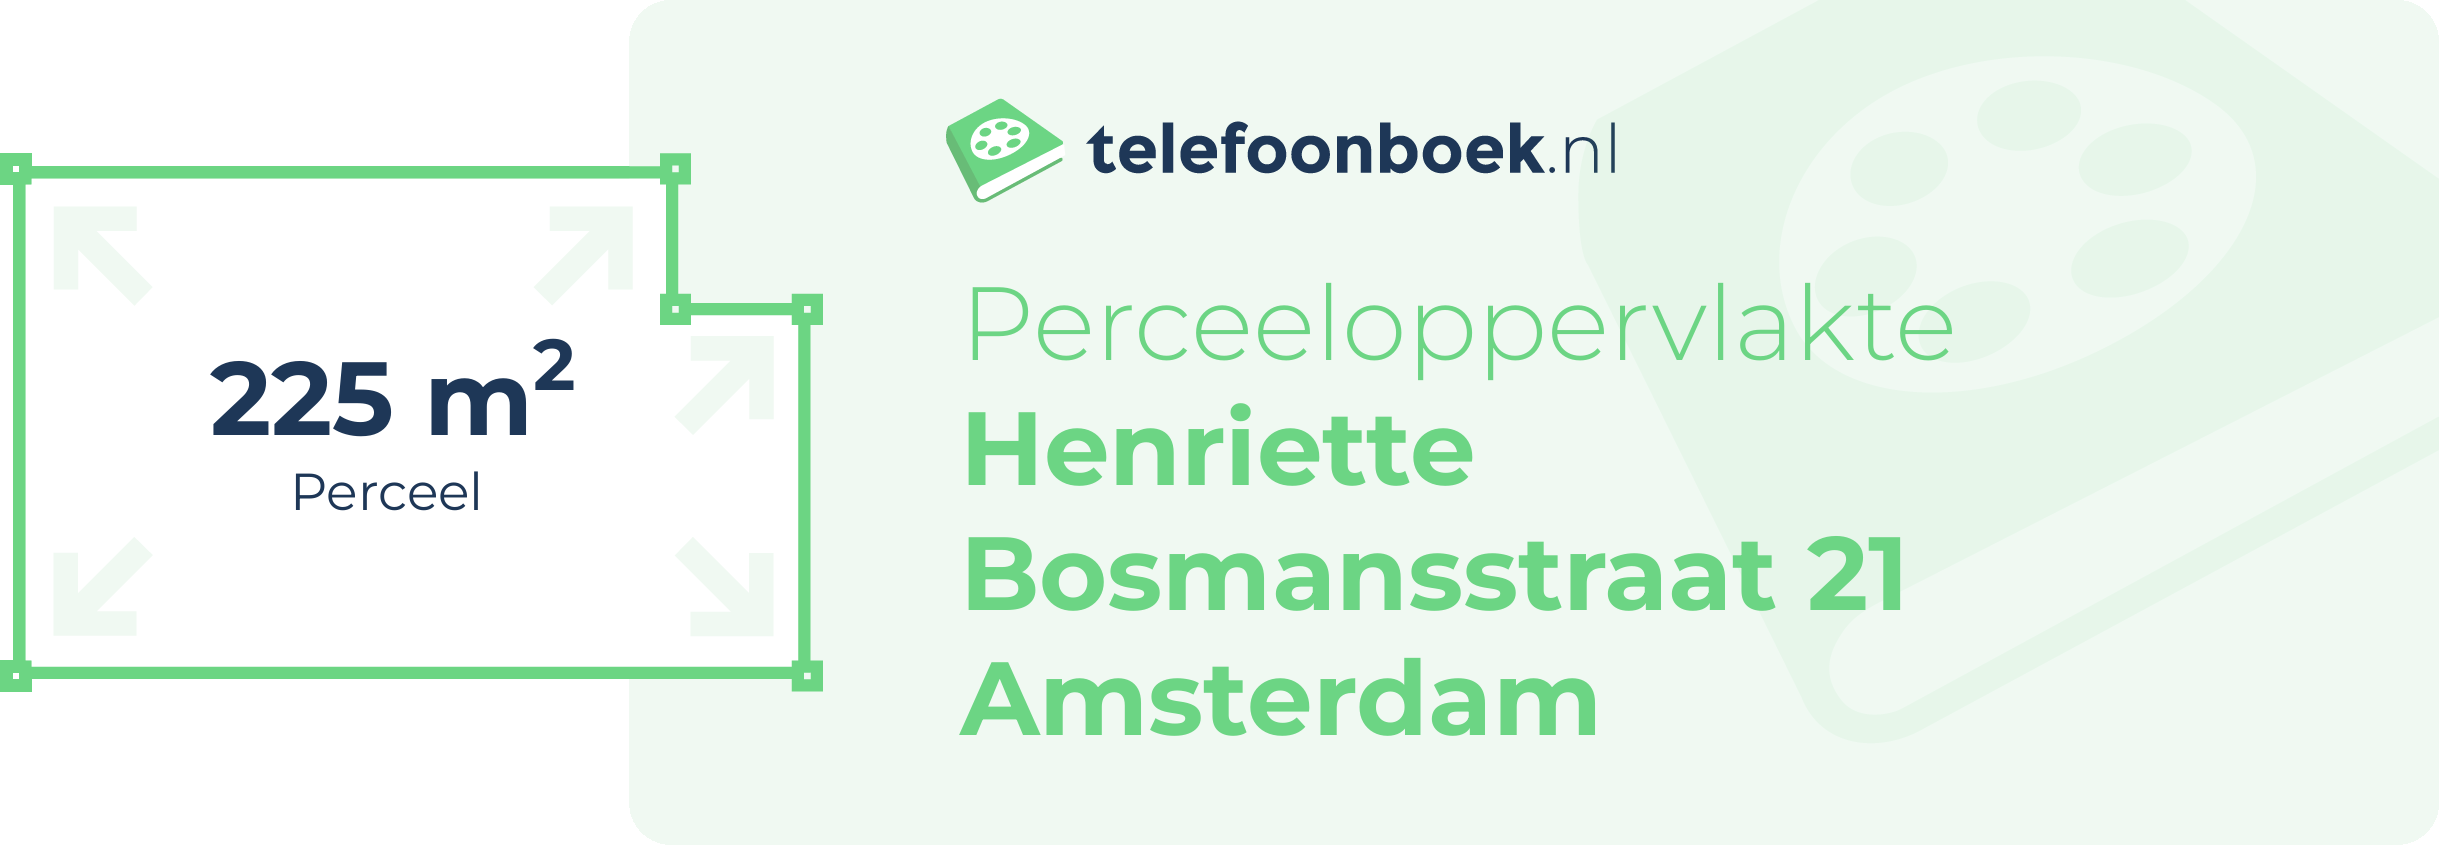 Perceeloppervlakte Henriette Bosmansstraat 21 Amsterdam